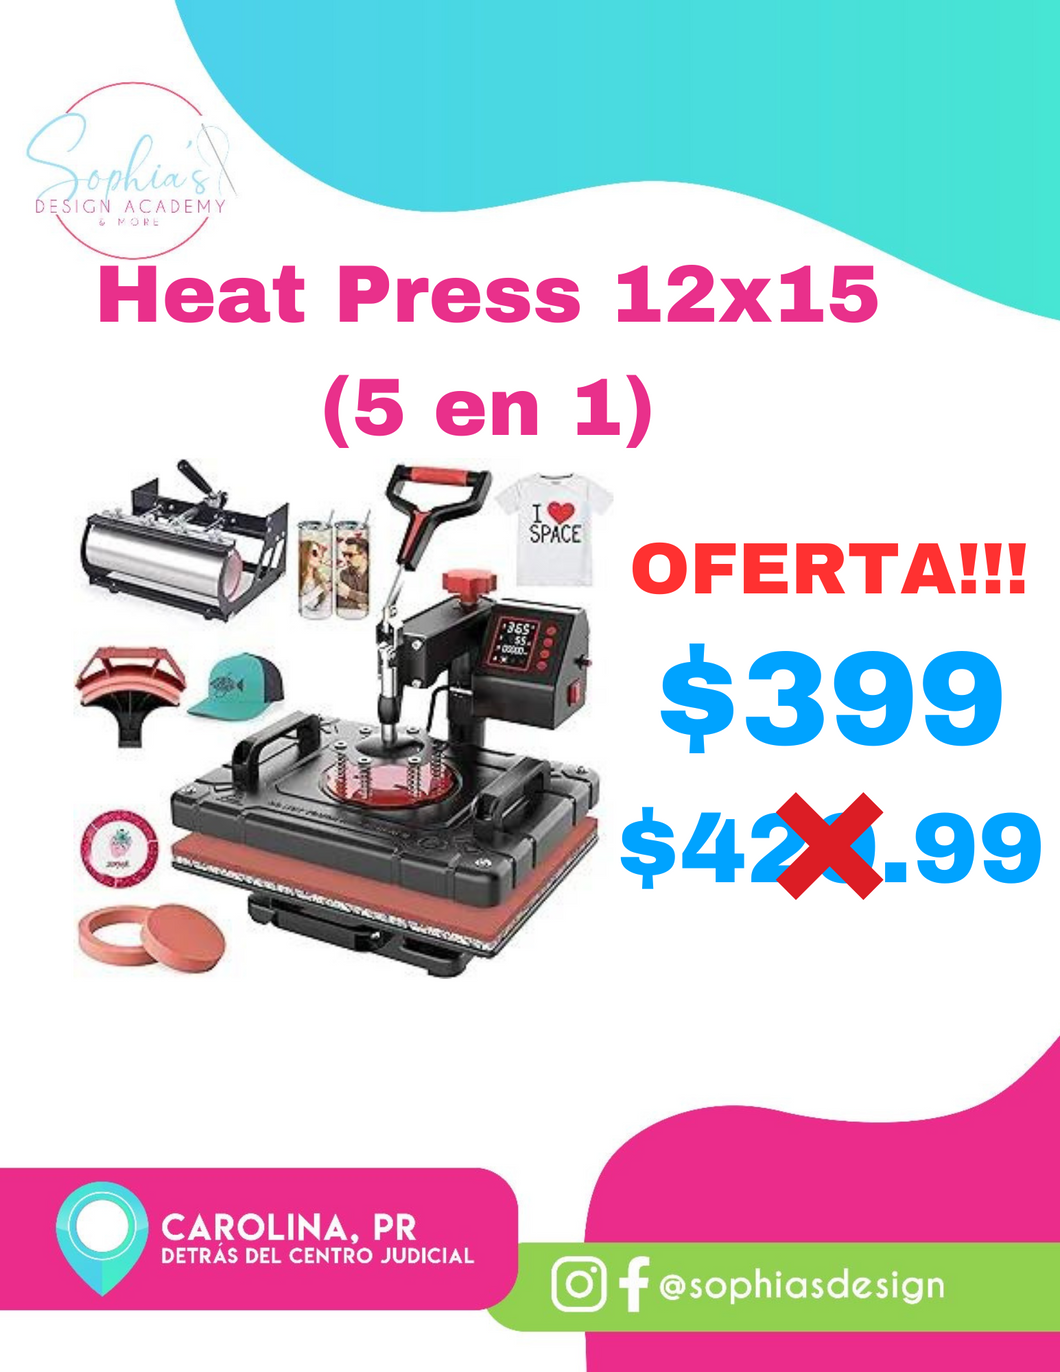 Heat Press 5 en 1 